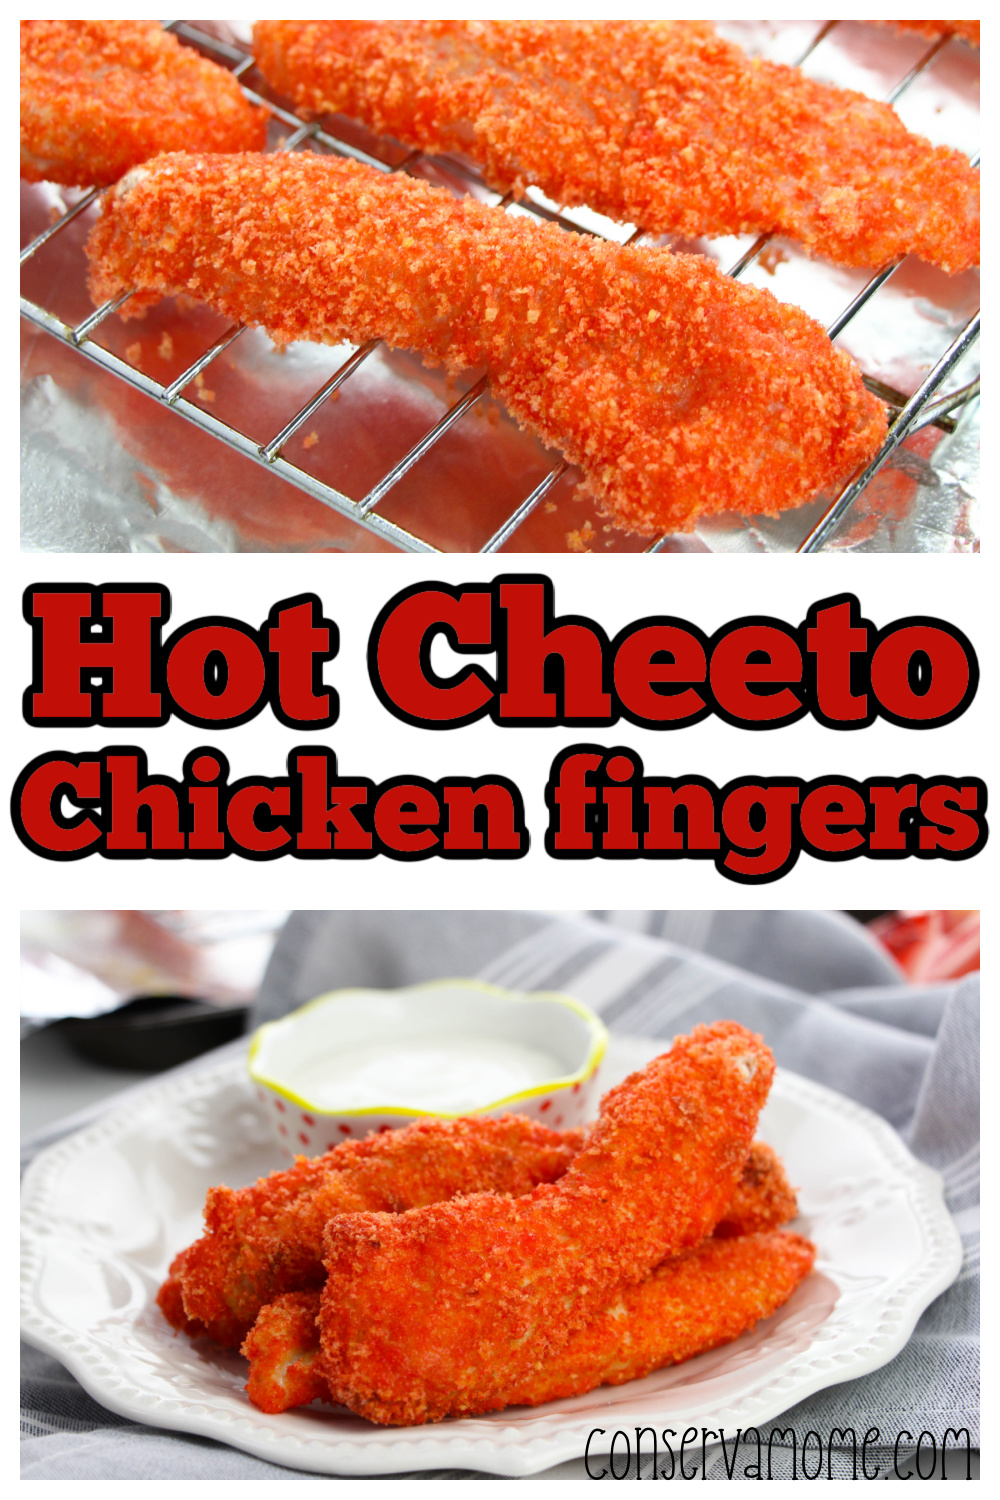 Hot Cheeto Chicken fingers